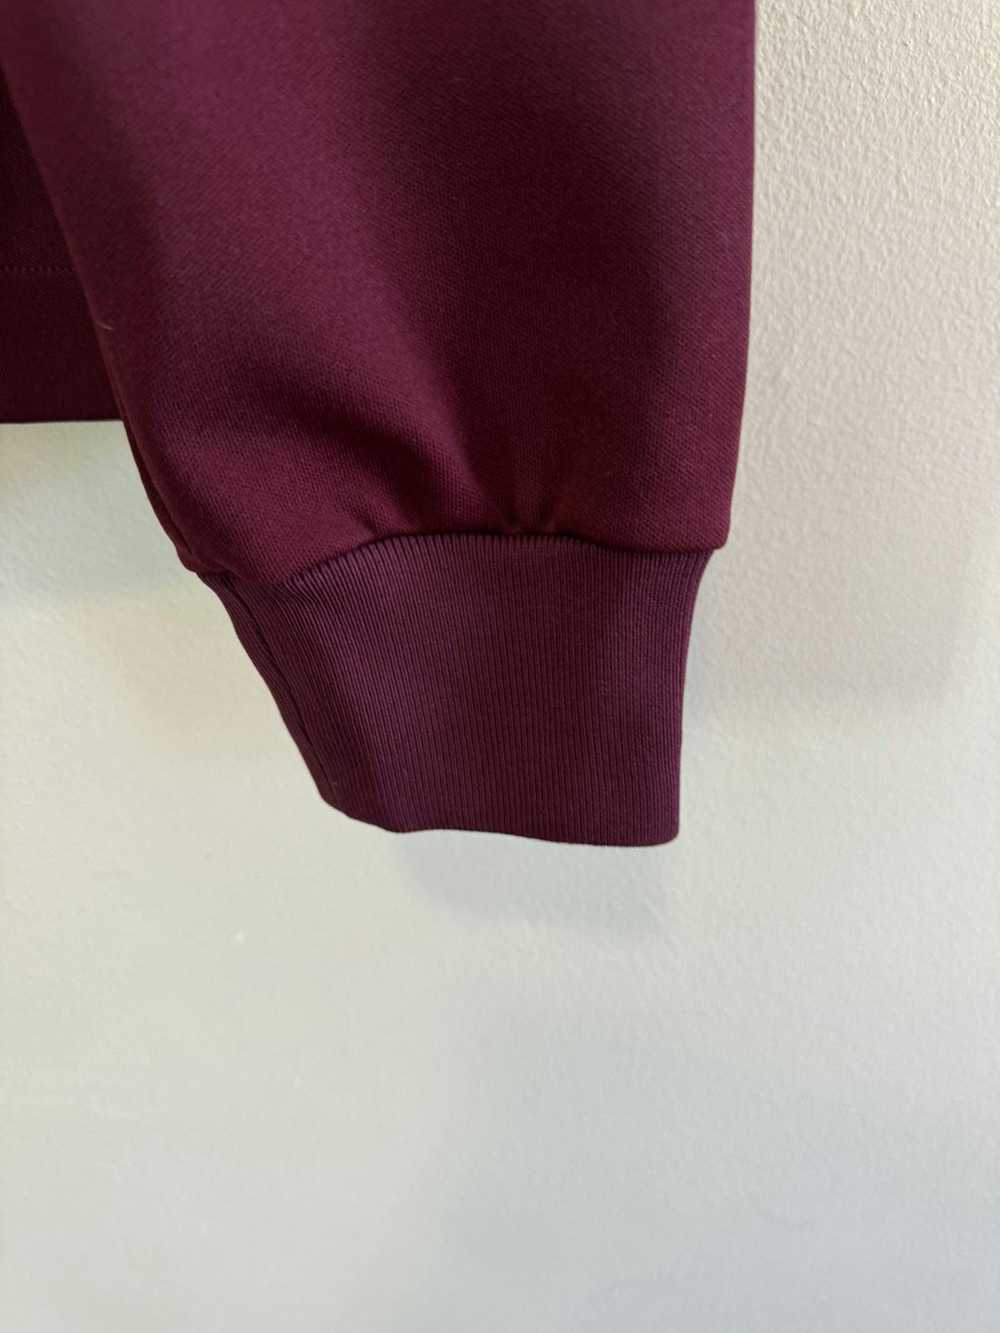 Jil Sander Jil Sander maroon burgundy sweatshirt … - image 6